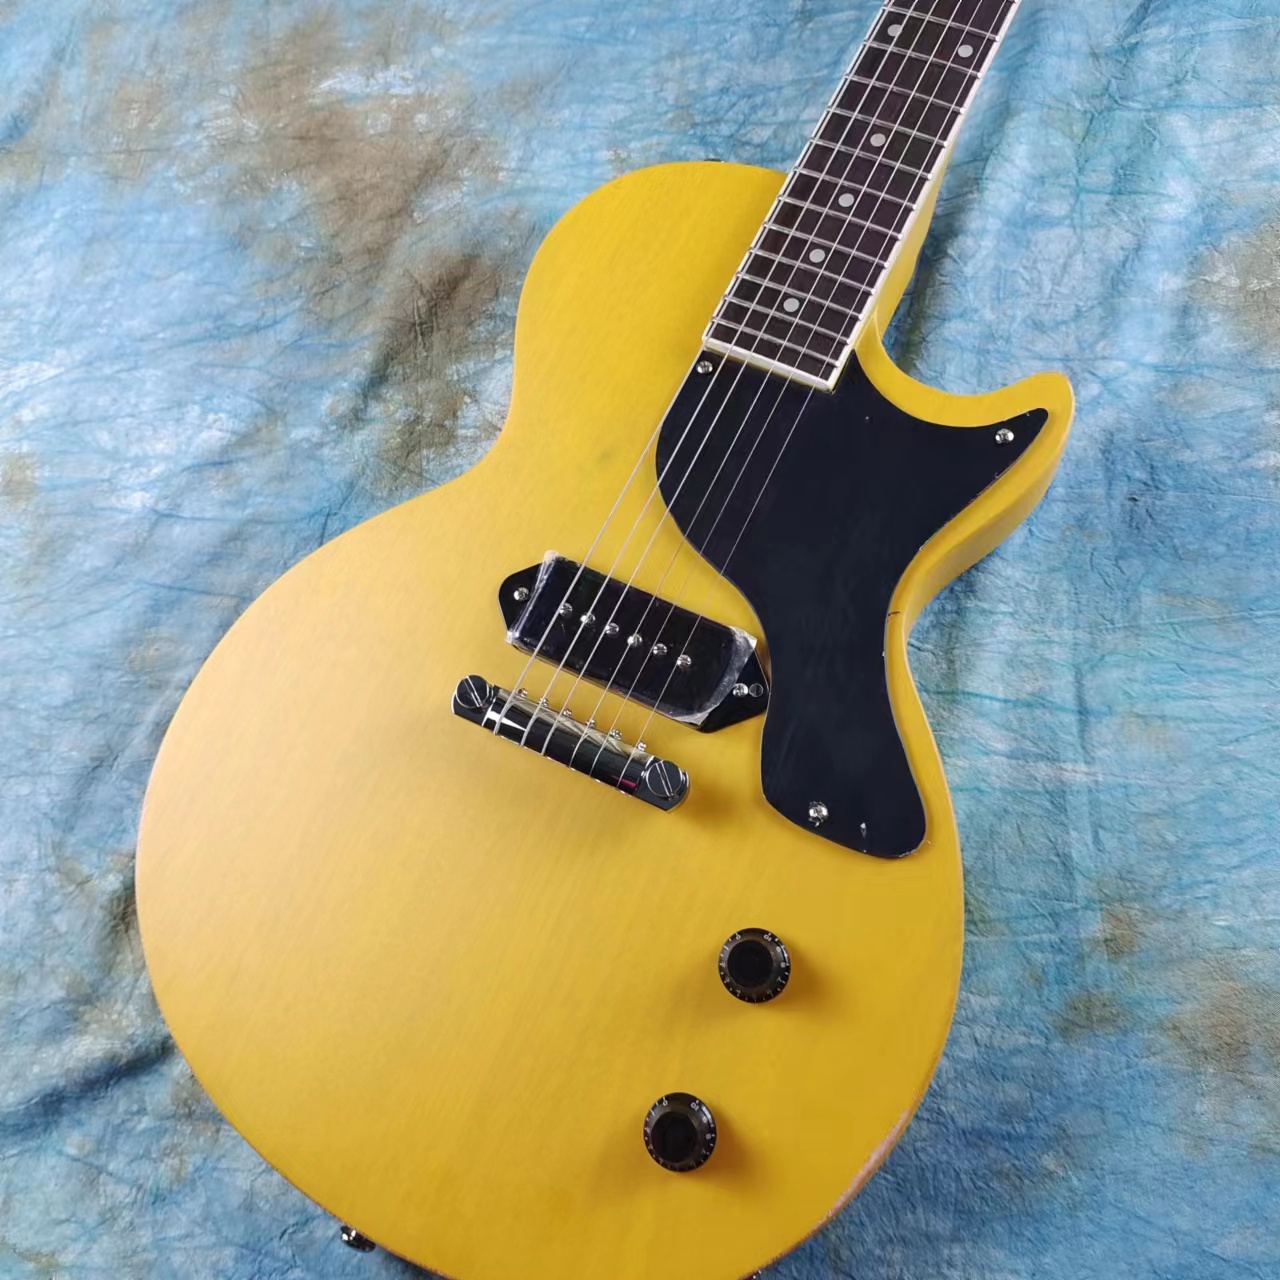 Guitarra eléctrica estándar hecha de caoba, cuerpo antiguo amarillo TV y botón de piano vintage, pastilla P90 disponible